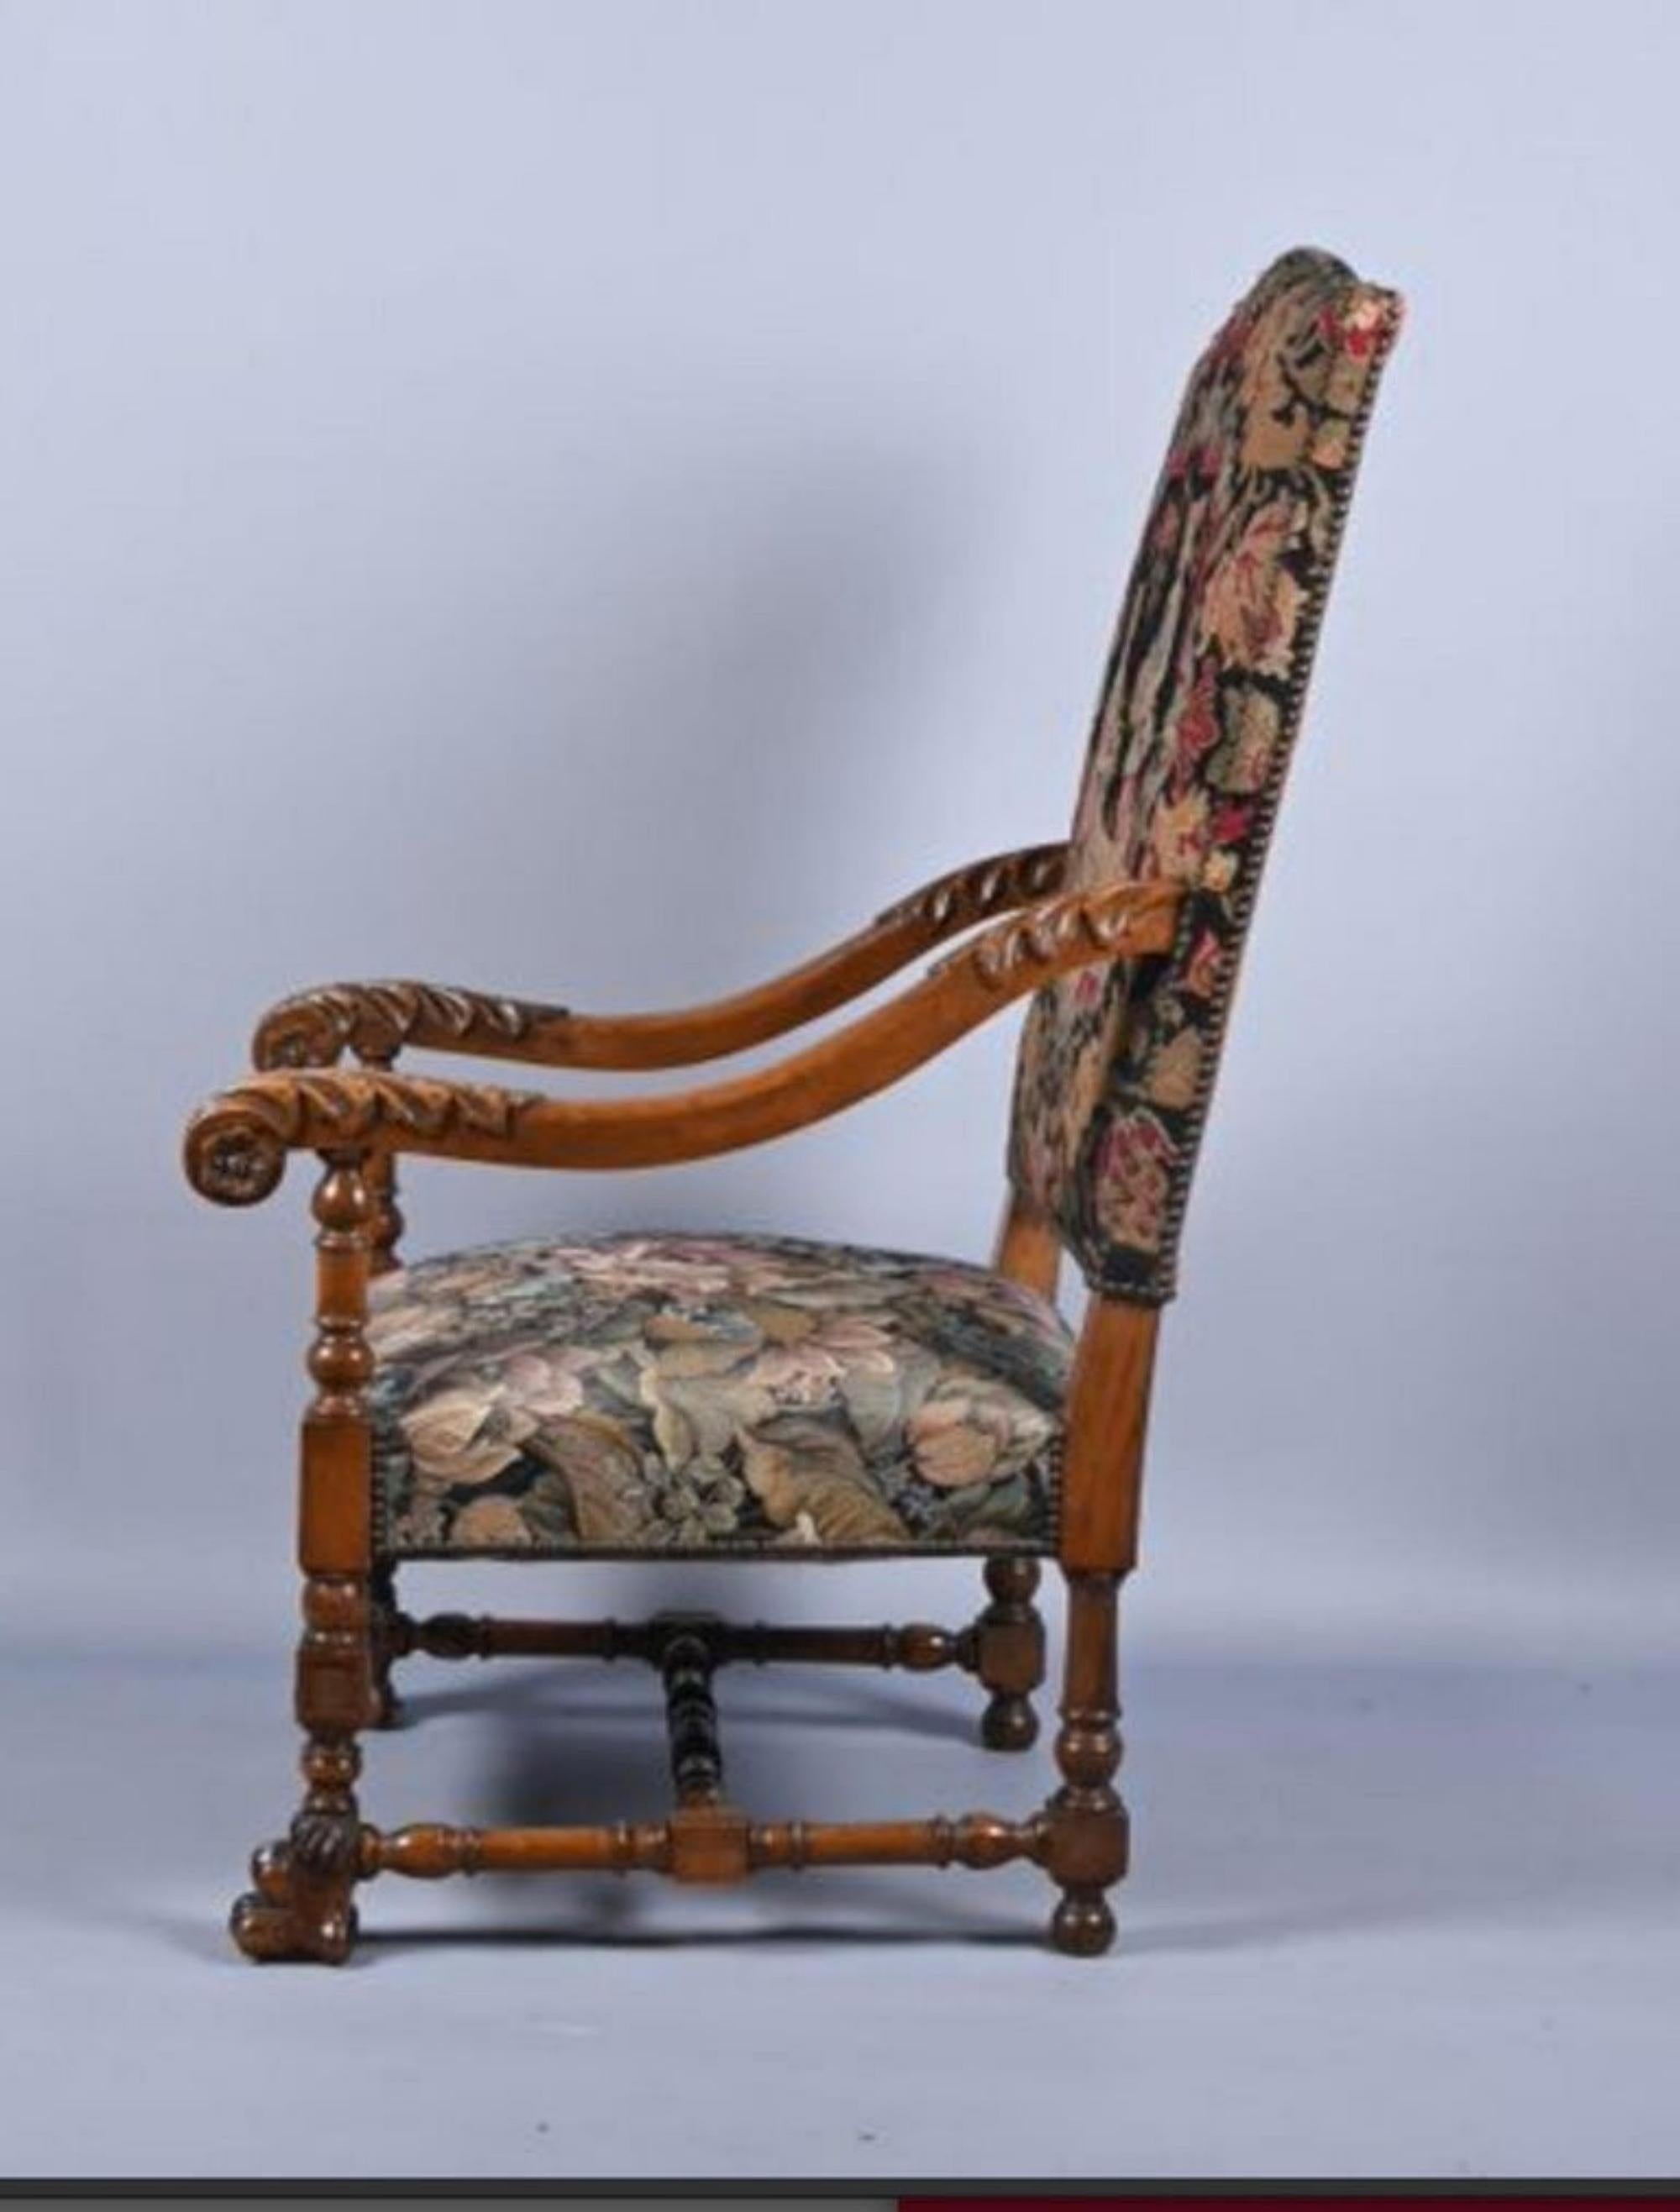 Seltener portugiesischer Stuhl aus Nussbaum aus dem 18.
Hochlehniger Sessel à la reine aus Nussbaum, profiliert und geschnitzt mit Akanthusblättern, Blattschalen und Blattwerk, vordere Klauenfüße verbunden durch eine H-förmige Strebe. Wandteppich